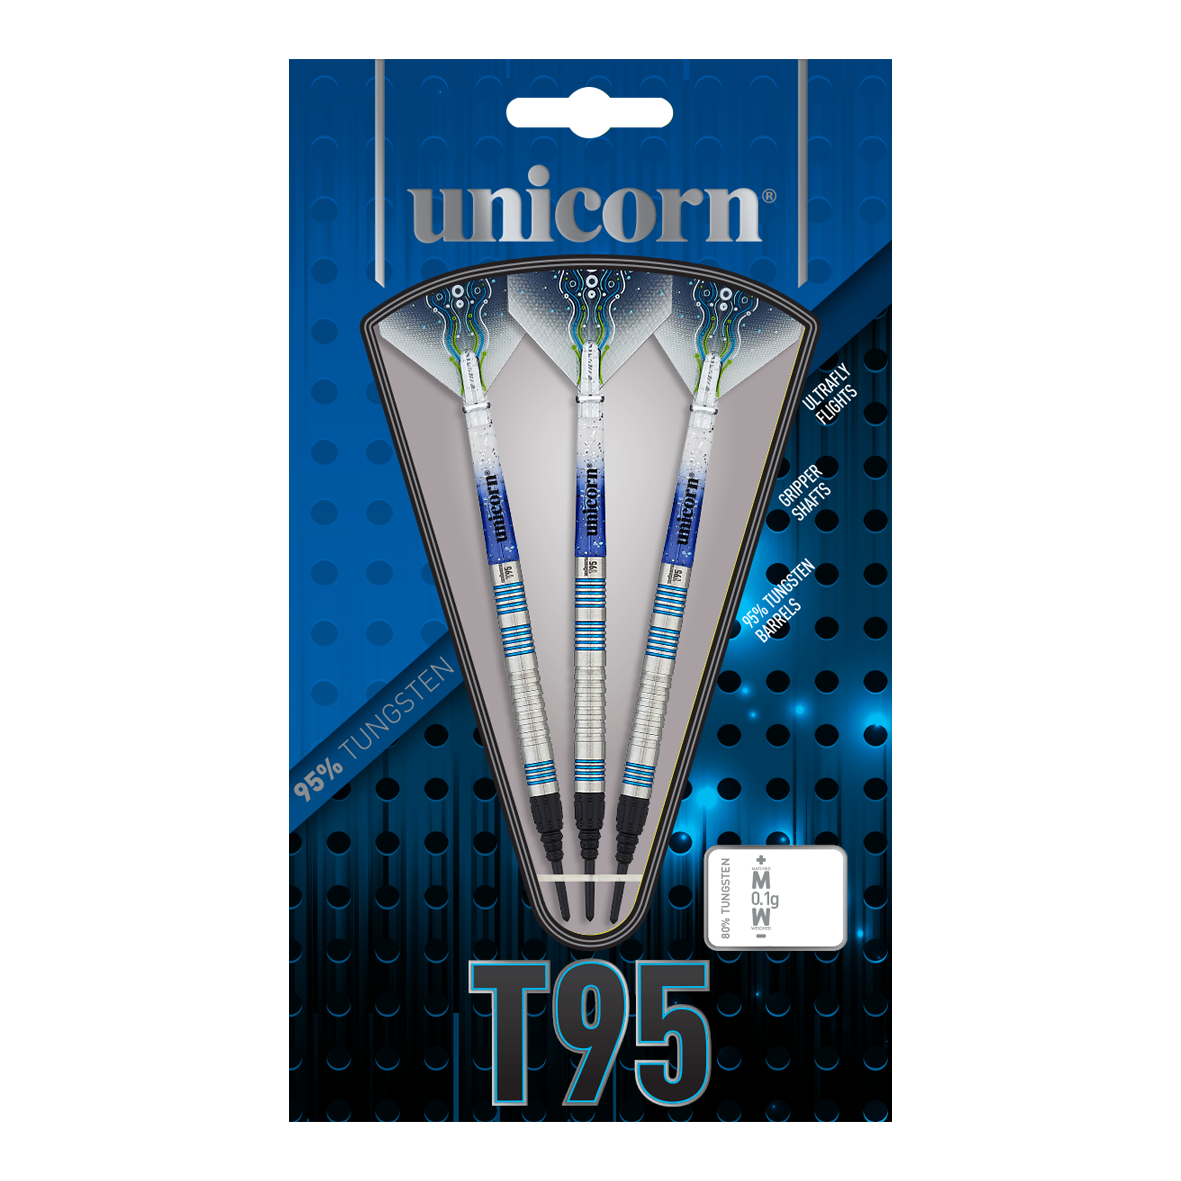 Unicorn T95 Core XL Blue Softdarts